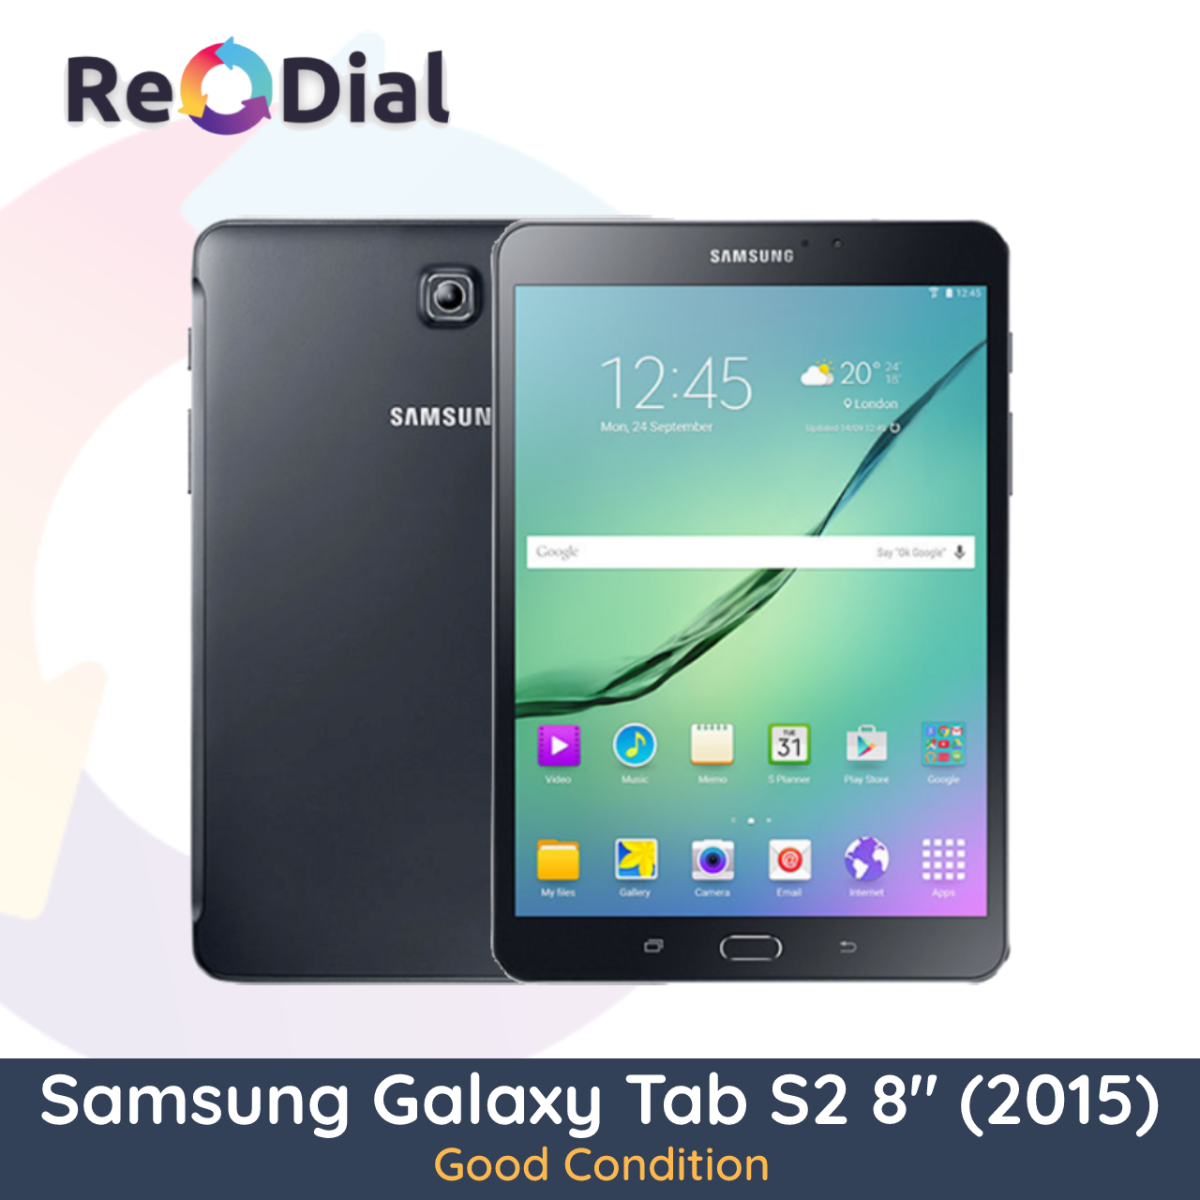 Samsung Galaxy Tab S2 8.0" (T719Y / 2015) WiFi + Cellular - Good Condition